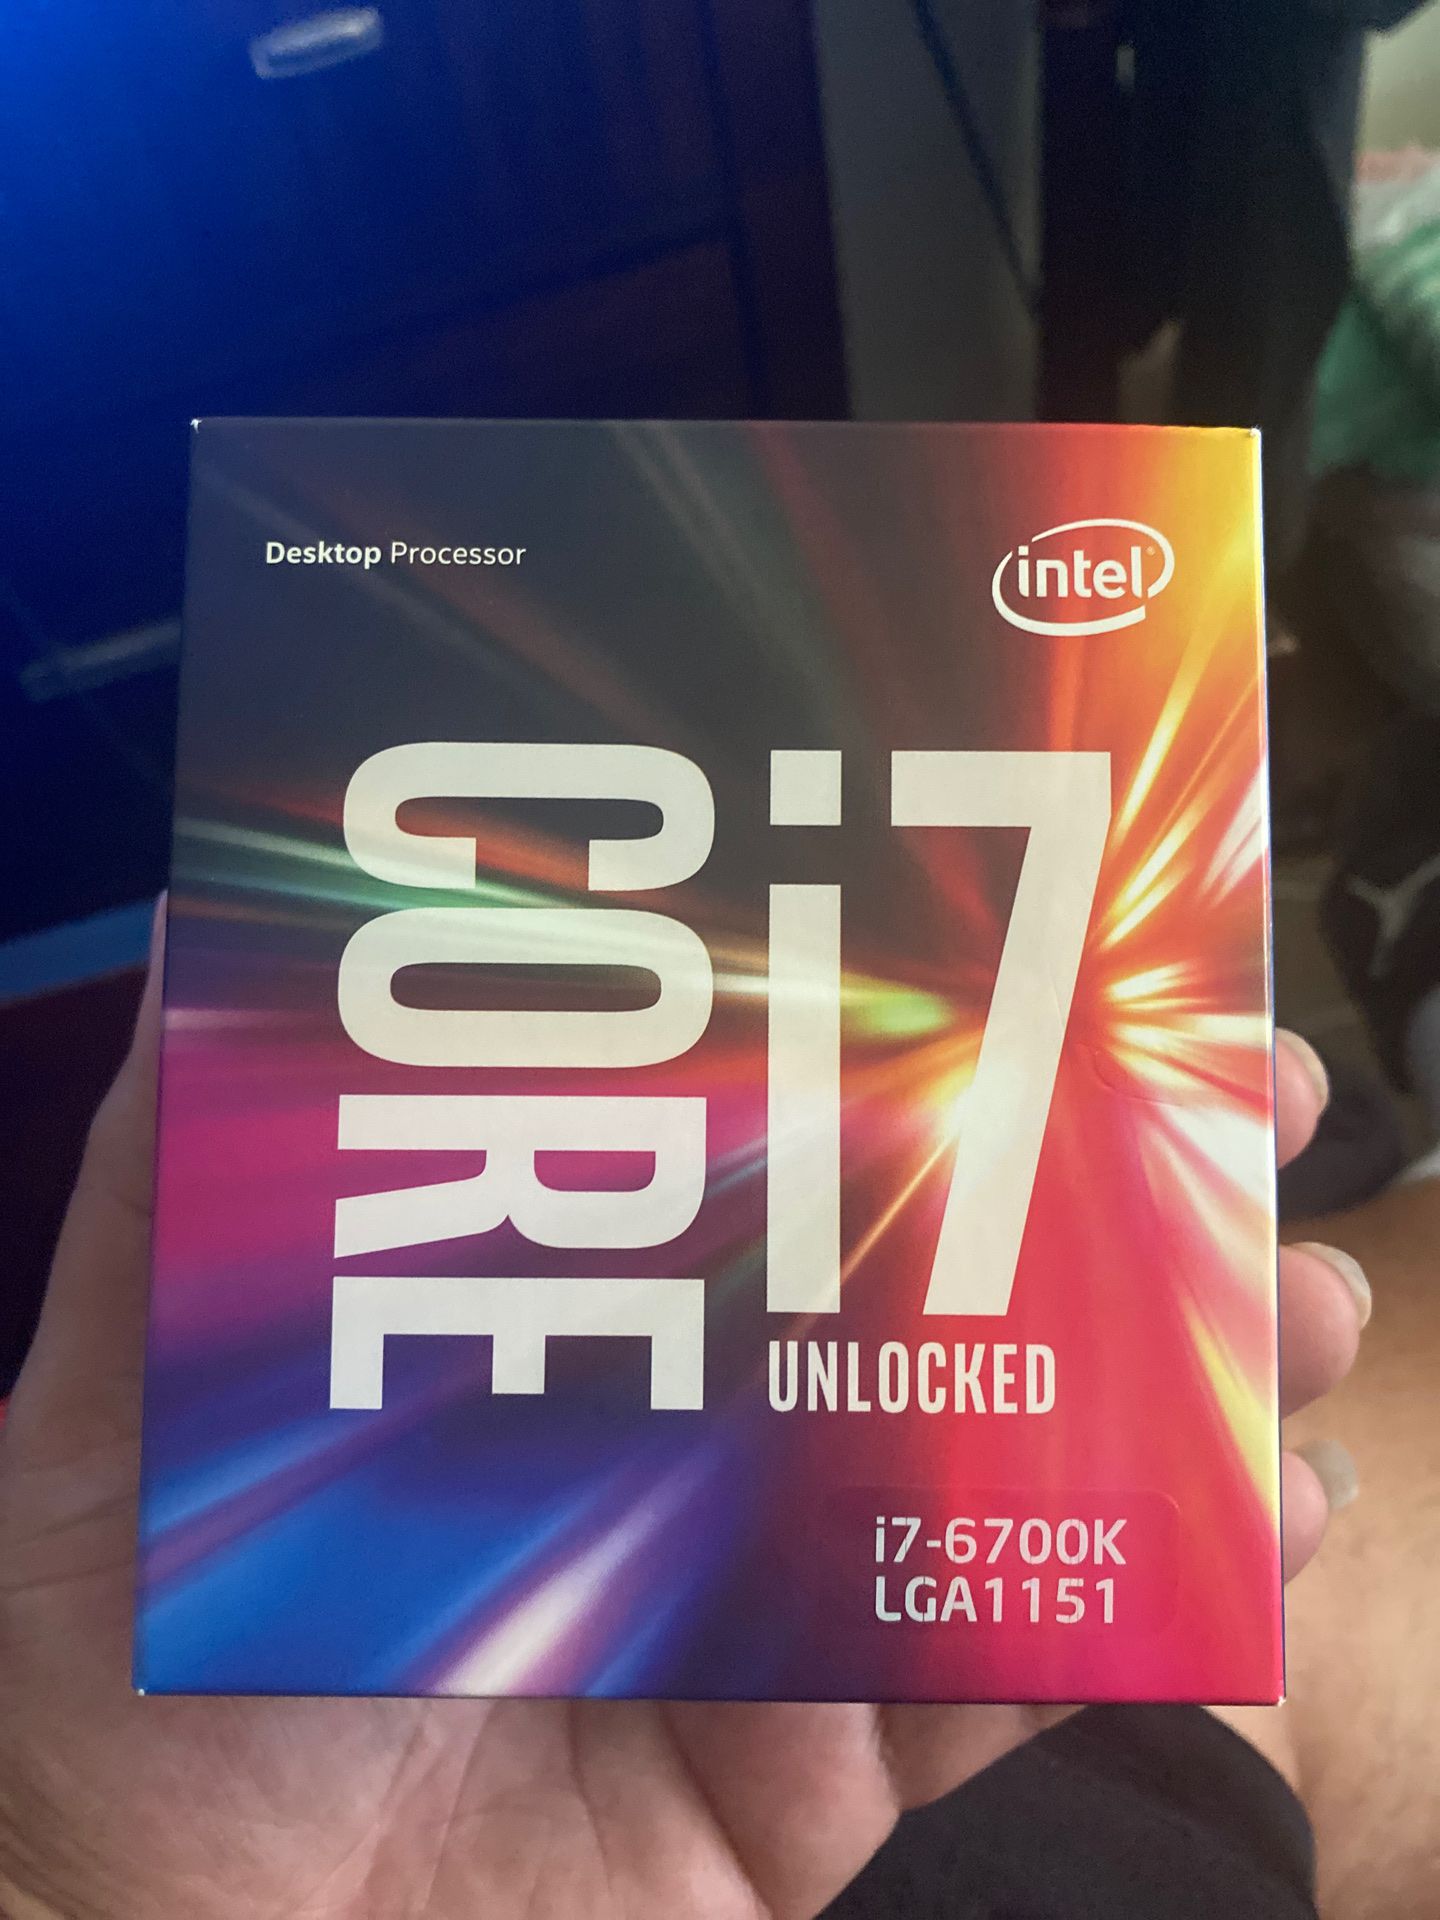 Core i7 unlocked